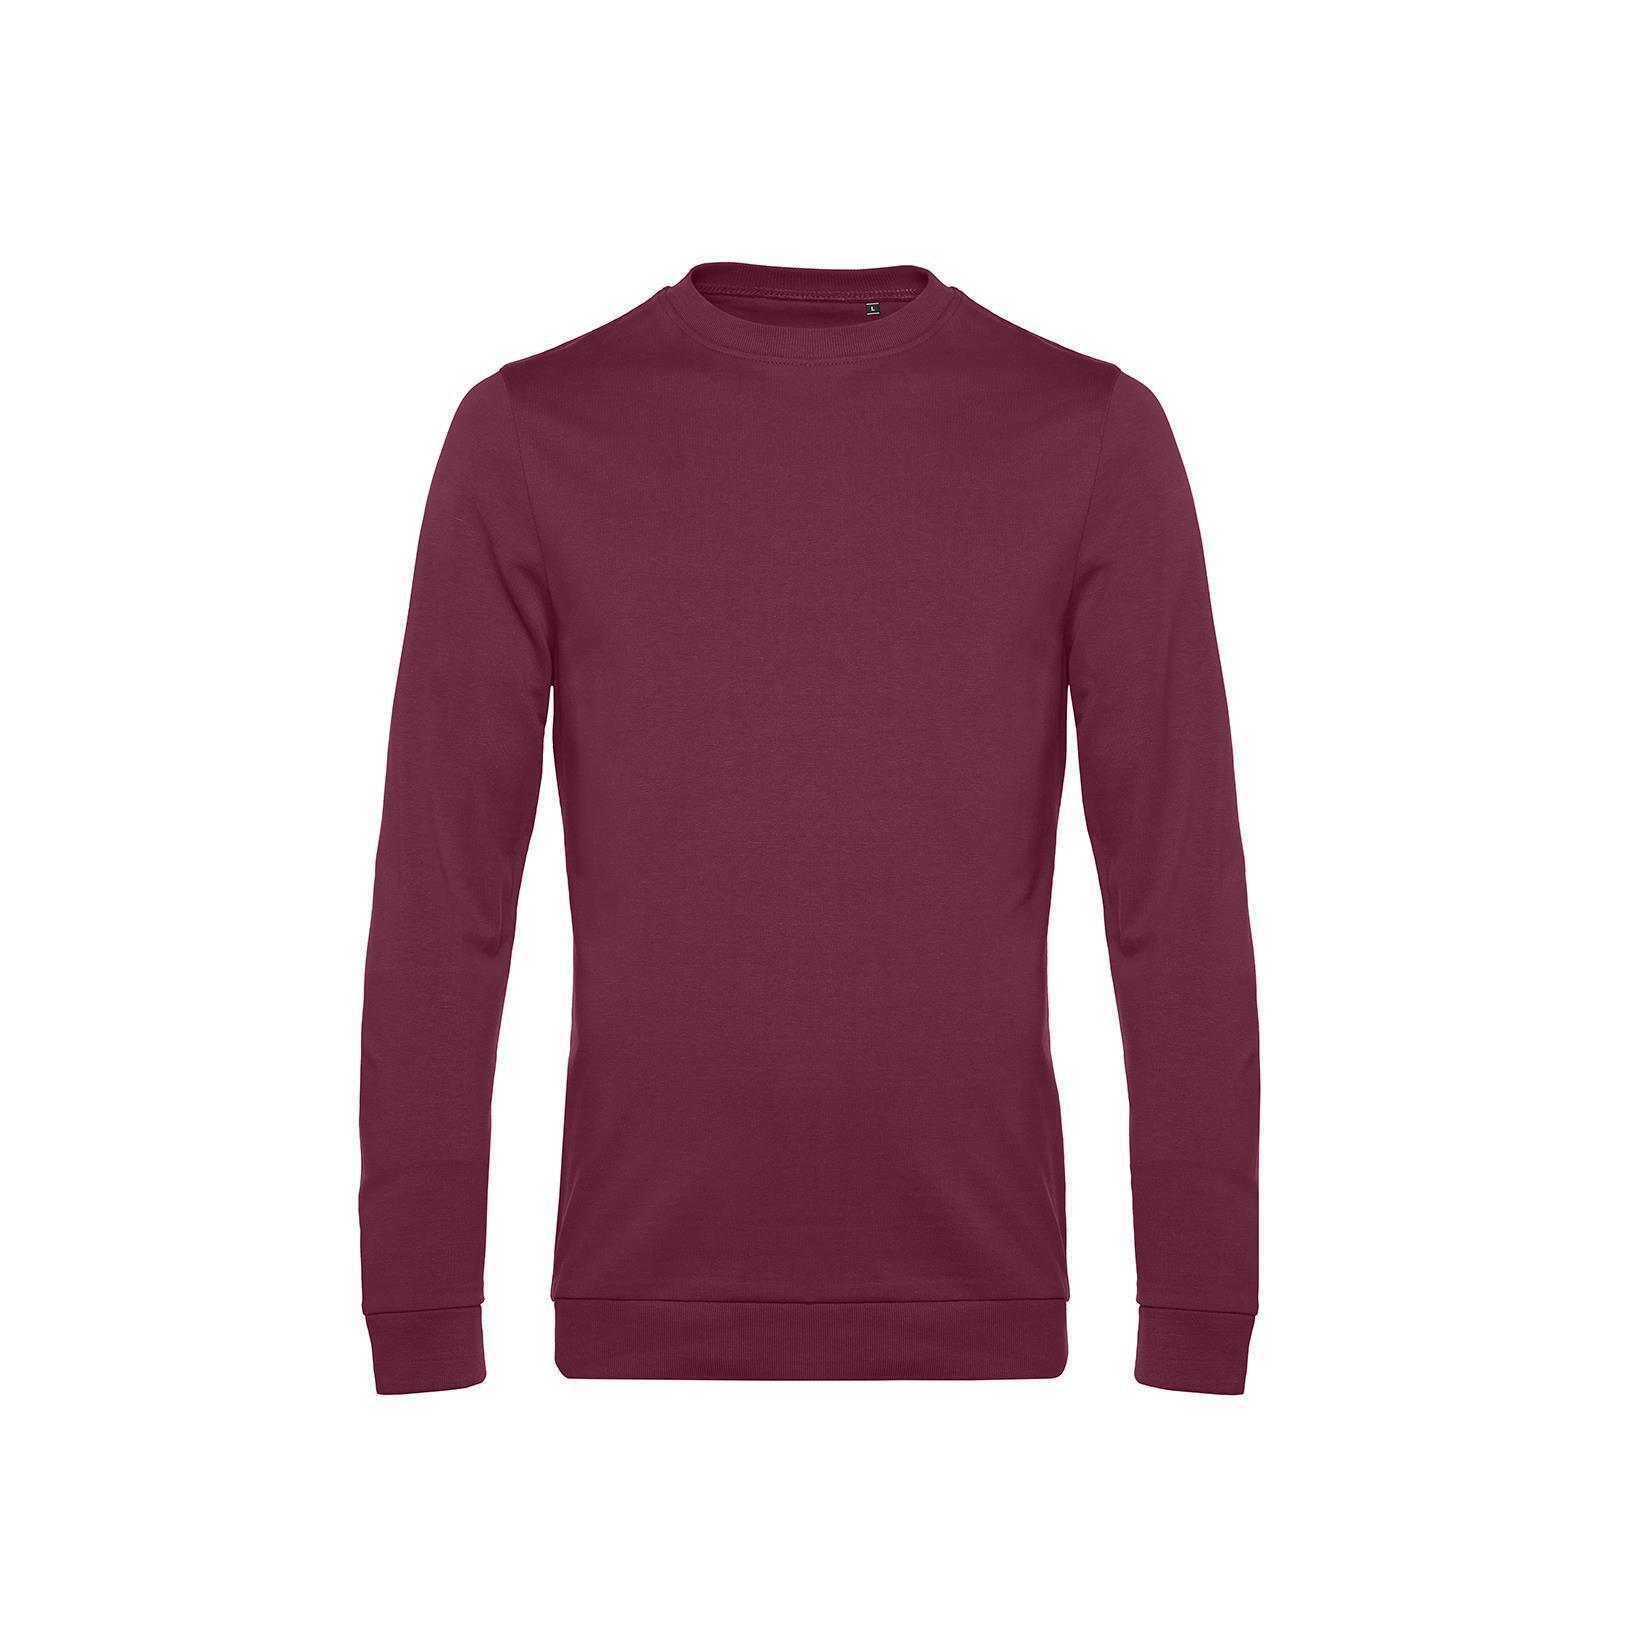 Trendy Sweater sweatshirt trui unisex heren kleur rode wijn rood